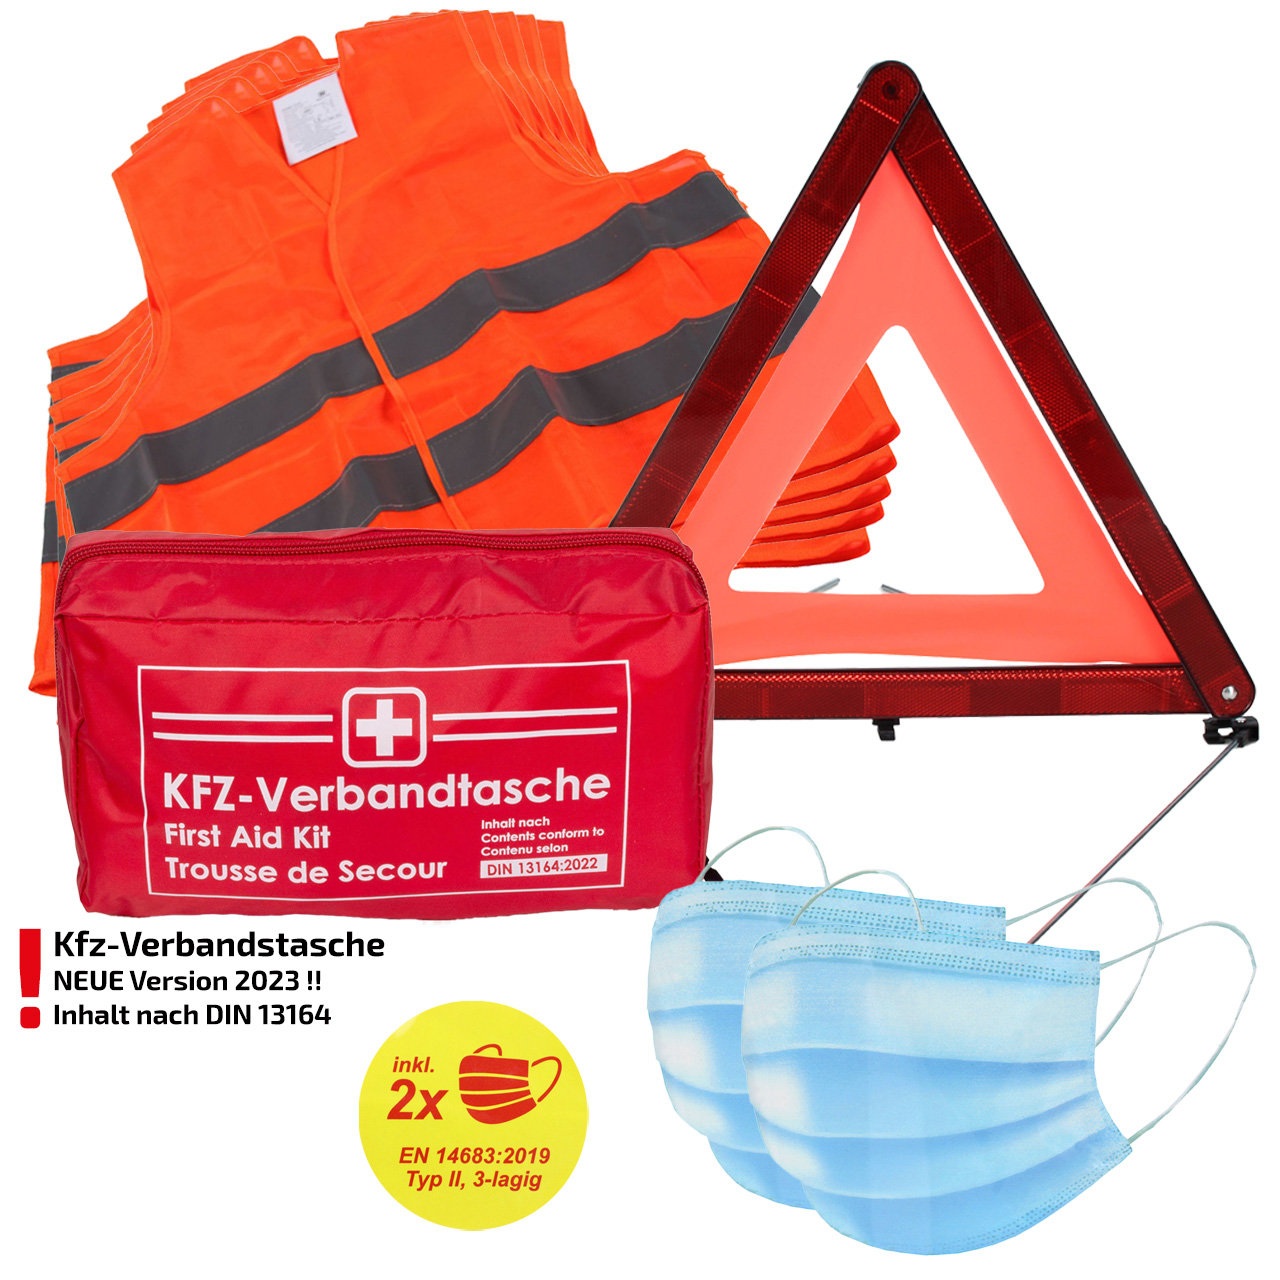 Verbandtasche Erste-Hilfe DIN13164-2022 (MHD 08.2028) + 5x Warnweste ORANGE + Warndreieck